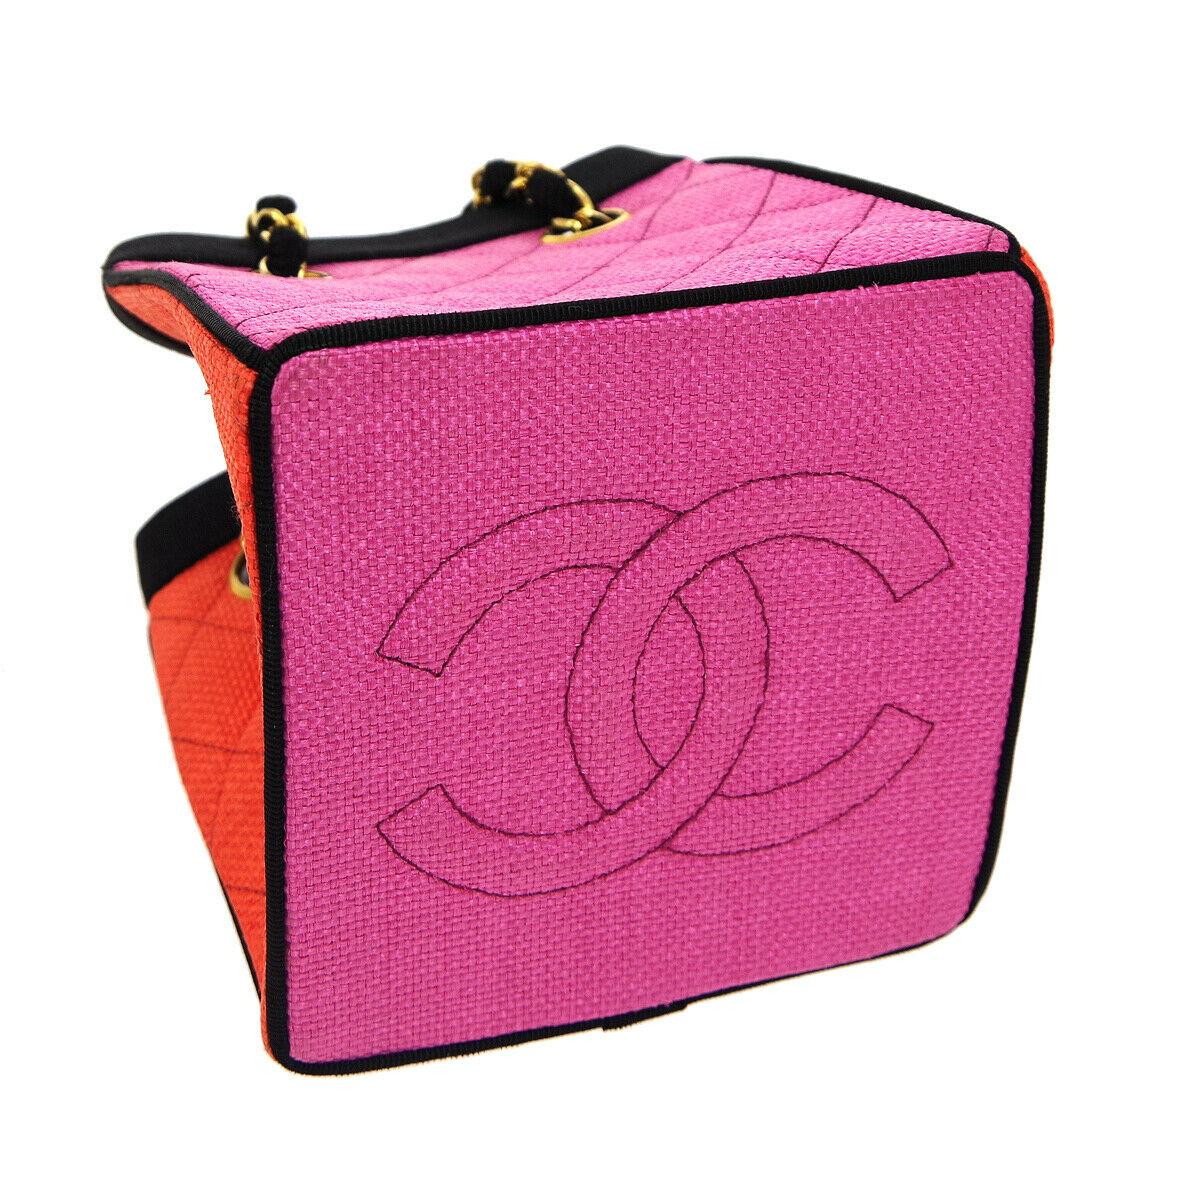 Chanel 1991 Multicolor Mini Vintage Tote Bag Rare Pink Orange Black Straw Tote For Sale 1